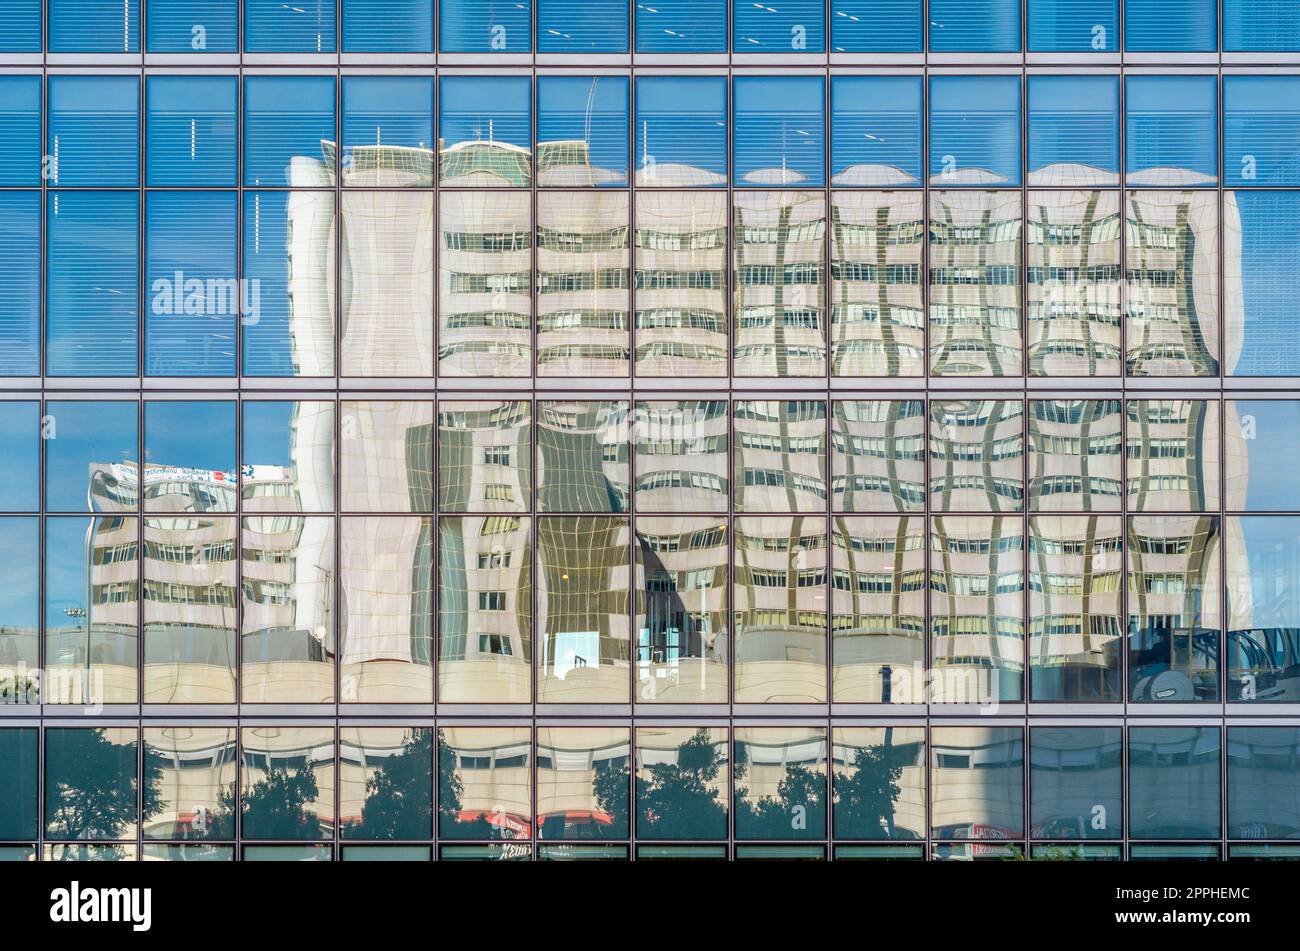 MADRID, SPANIEN - 6. OKTOBER 2021: Reflexion des Universitätsklinikums La Paz in der Glasfassade des Hochhauses Torre Emperador Castellana, der Teil des Geschäftsbereichs Cuatro Torres in Madrid, Spanien ist Stockfoto